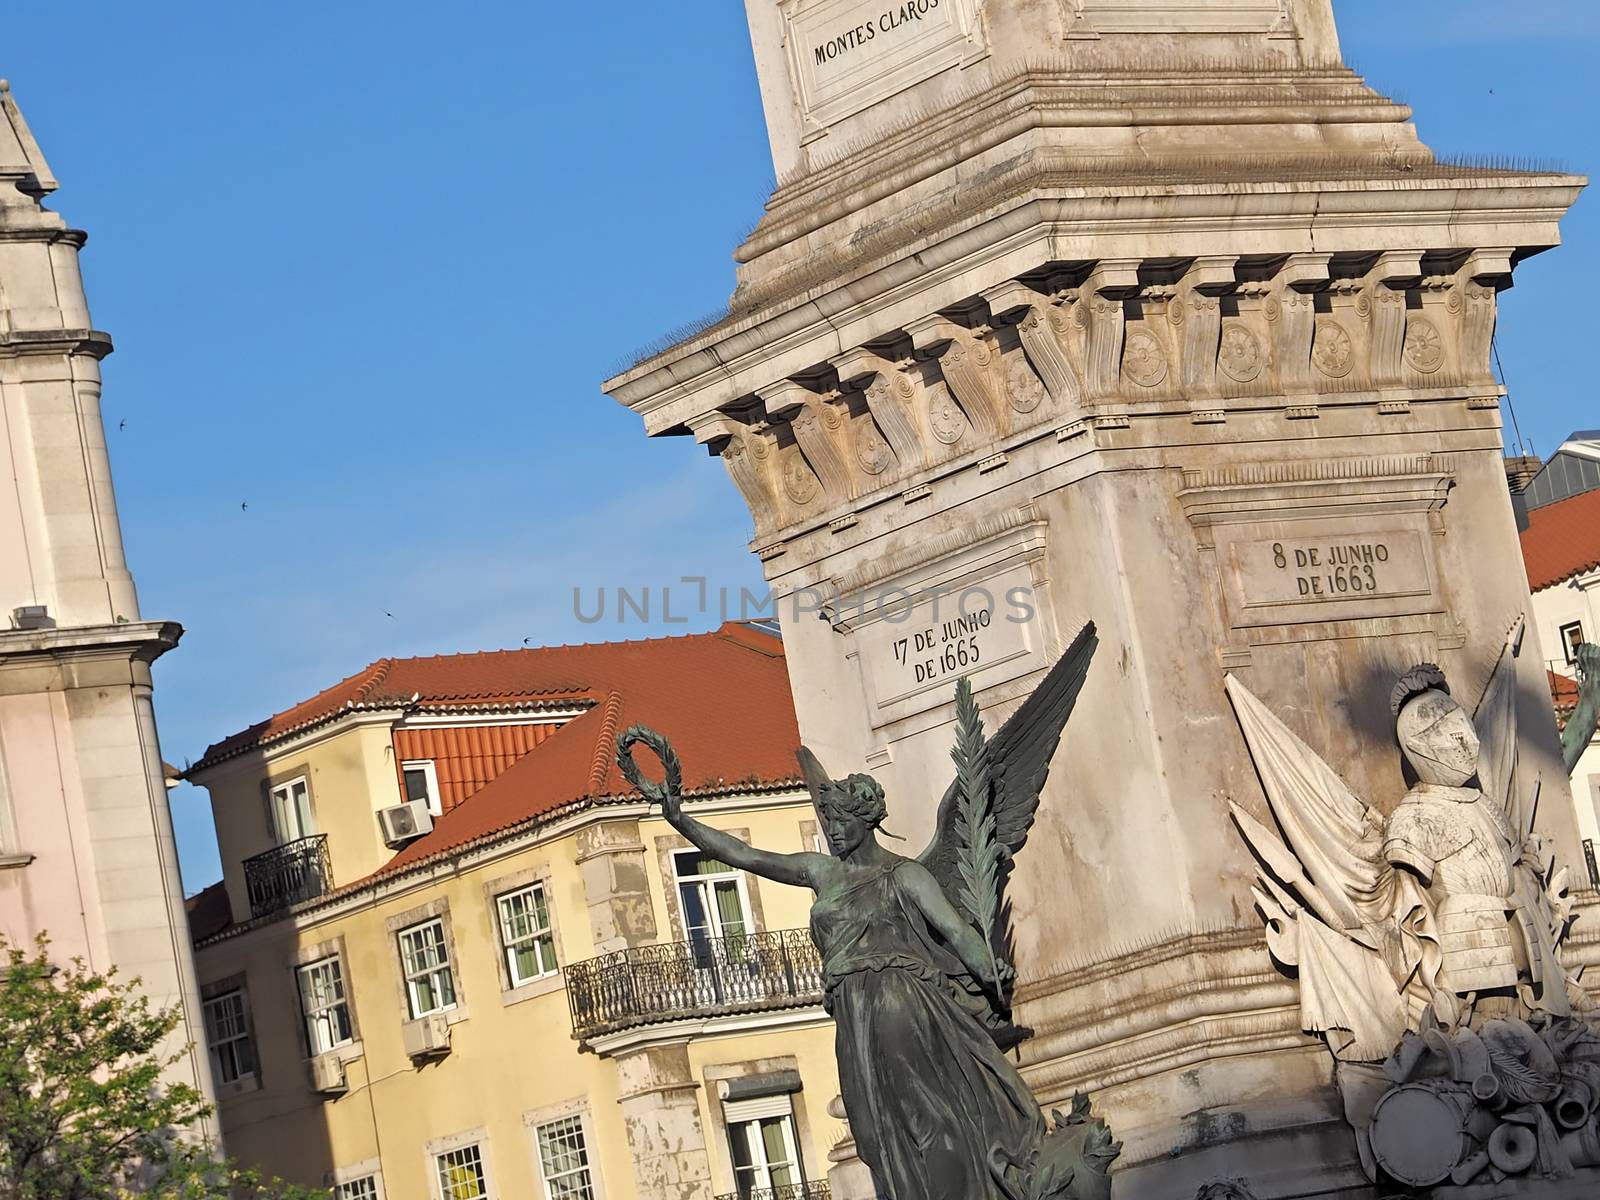 Sculpture at the Restauradores Square in Lisbon in Portugal by Stimmungsbilder